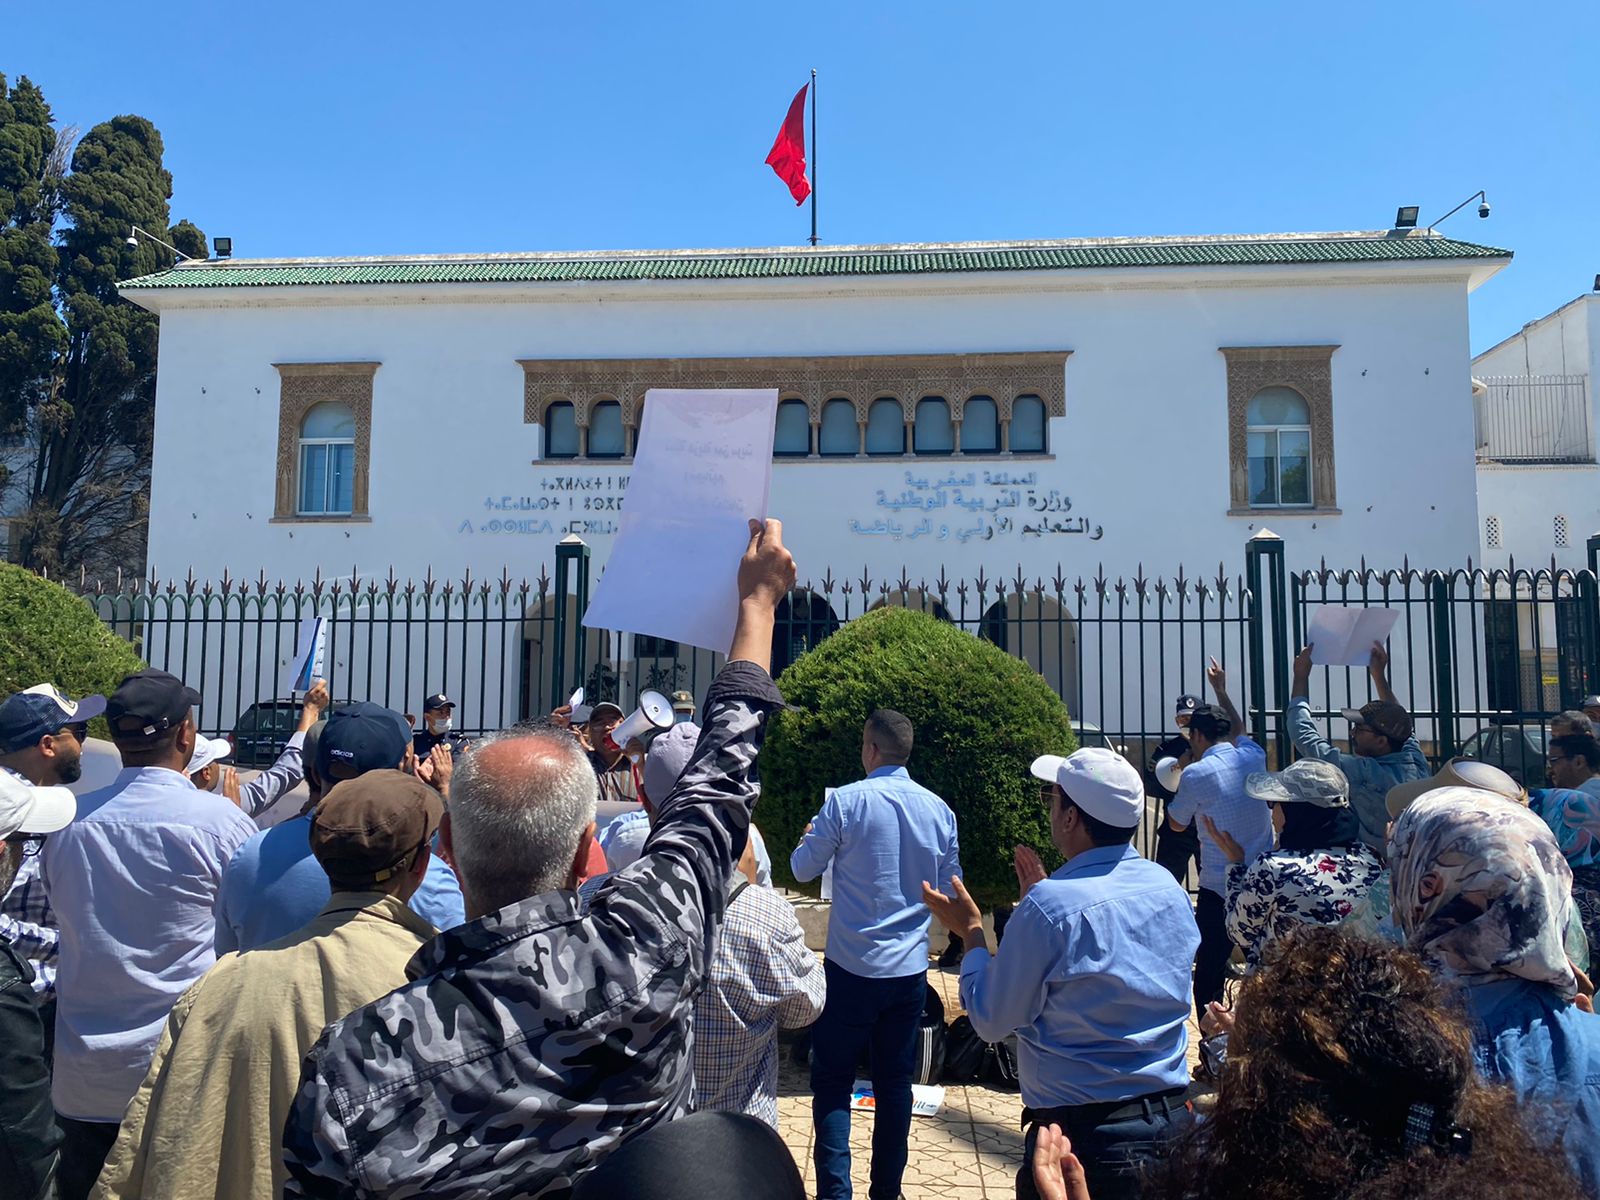 تجميد الترقيات يدفع أساتذة للاحتجاج والاعتصام أمام وزارة التربية الوطنية بالرباط